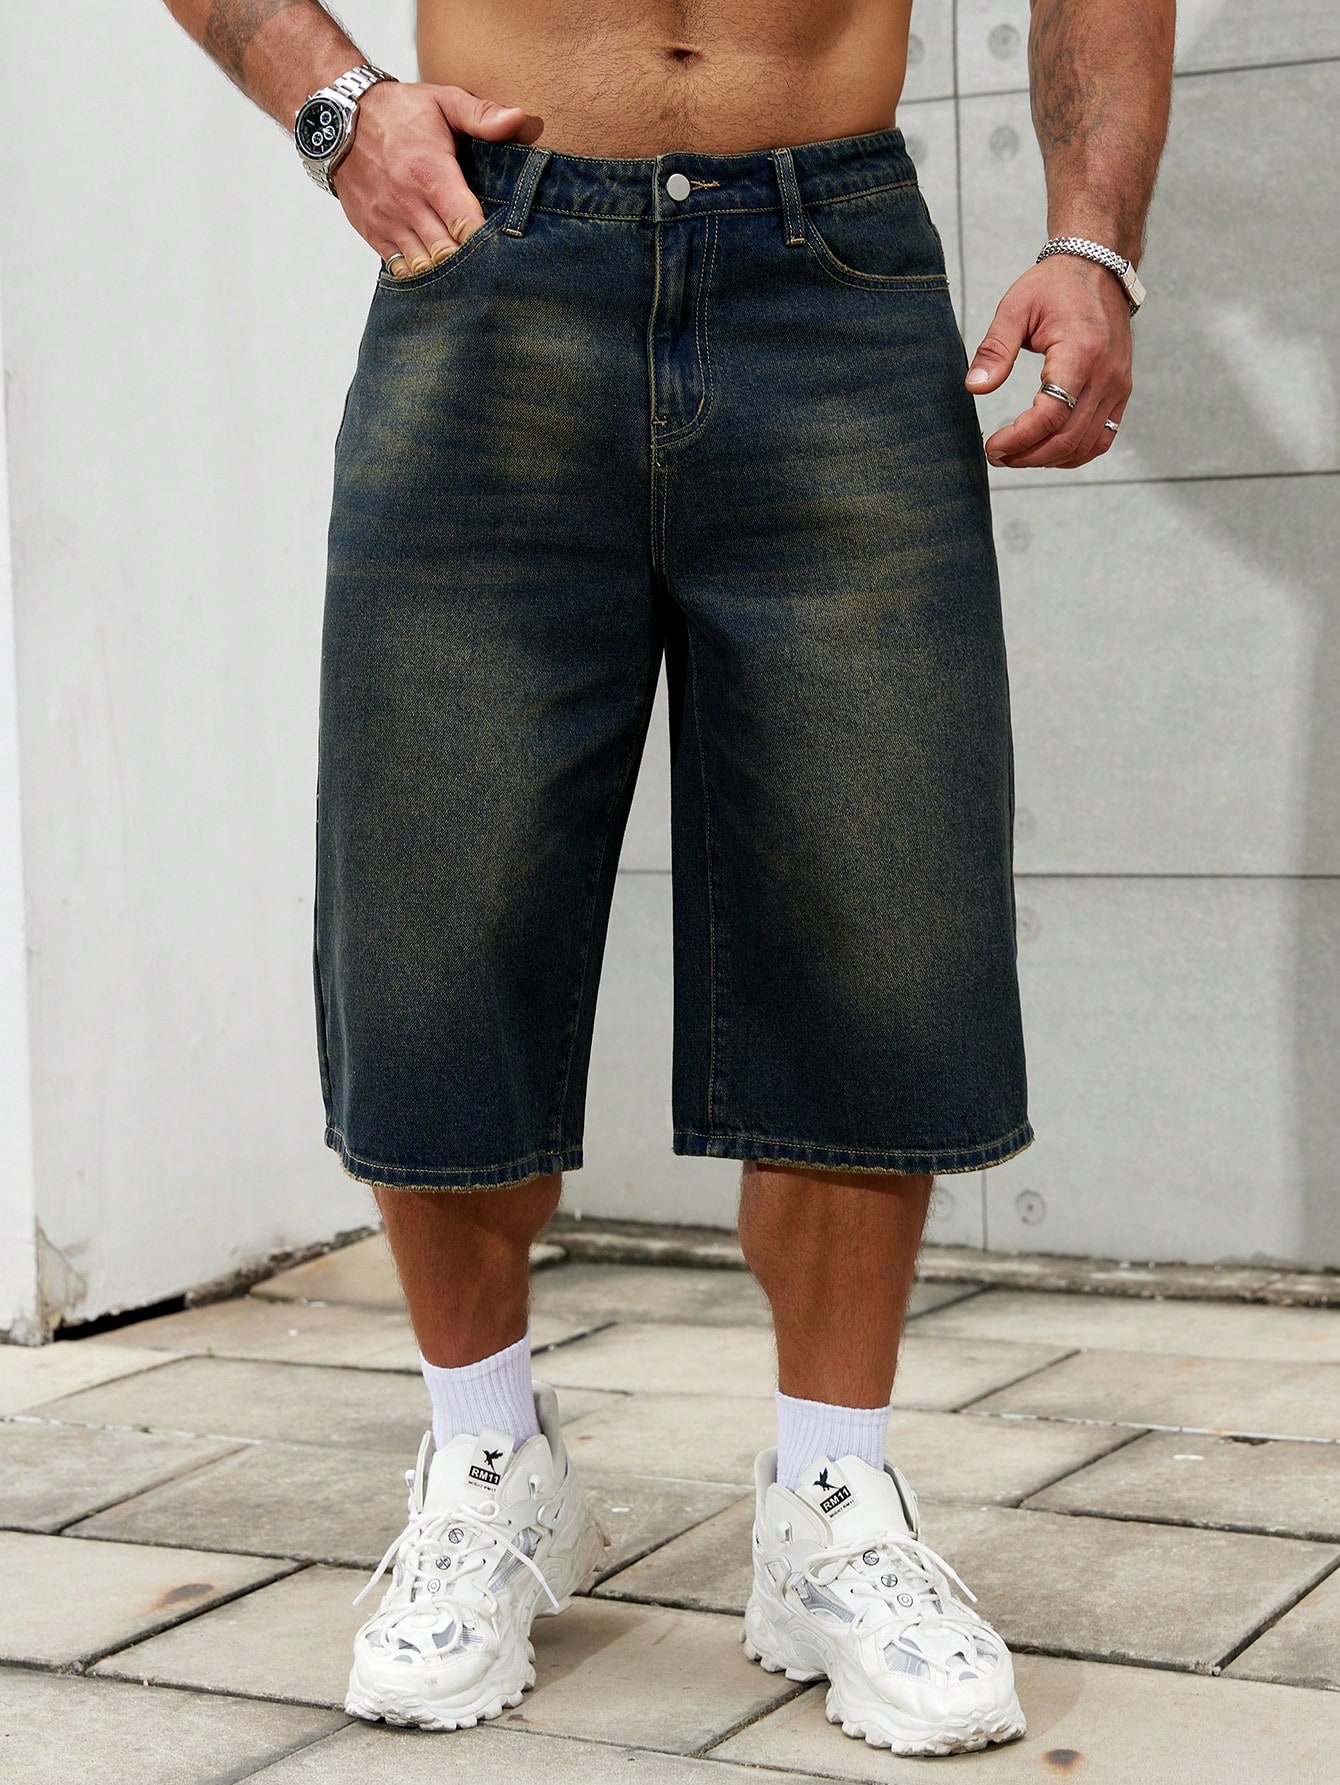 Мужские джинсовые шорты Manfinity Hypemode, темная стирка